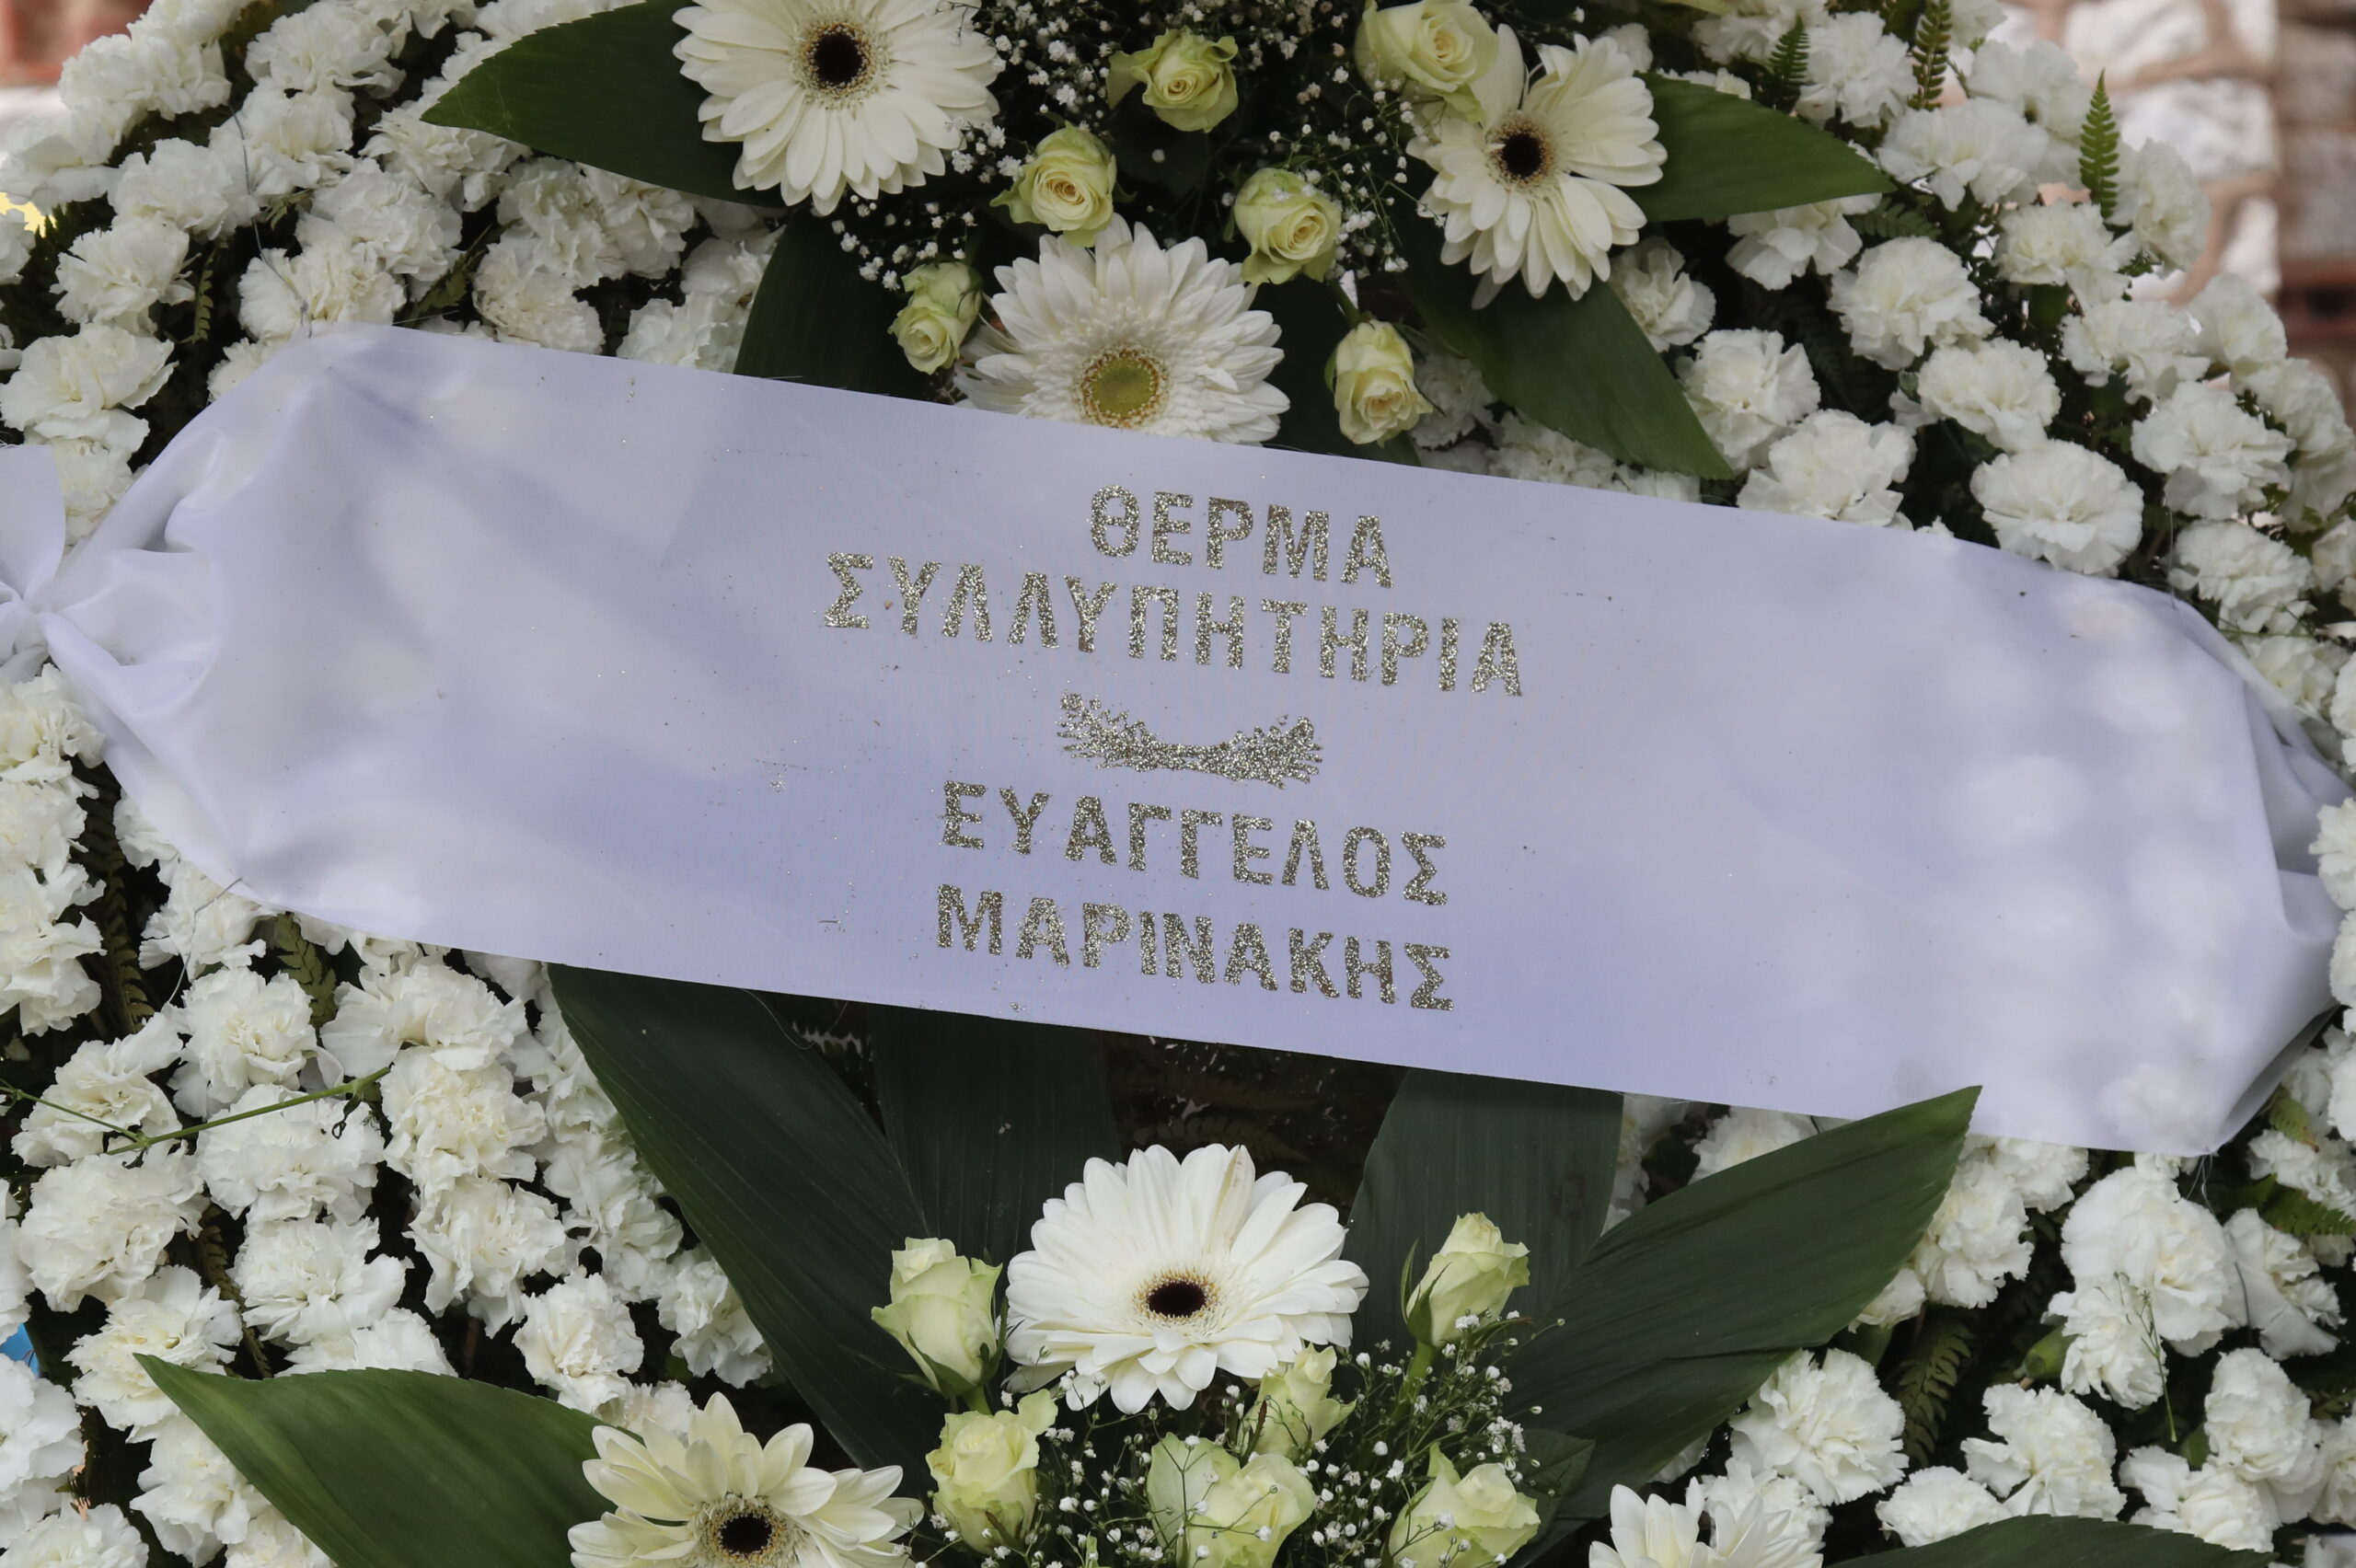 Σε λαϊκό προσκύνημα η σορός του Μίμη Παπαϊωάννου | Το μεσημέρι η κηδεία του